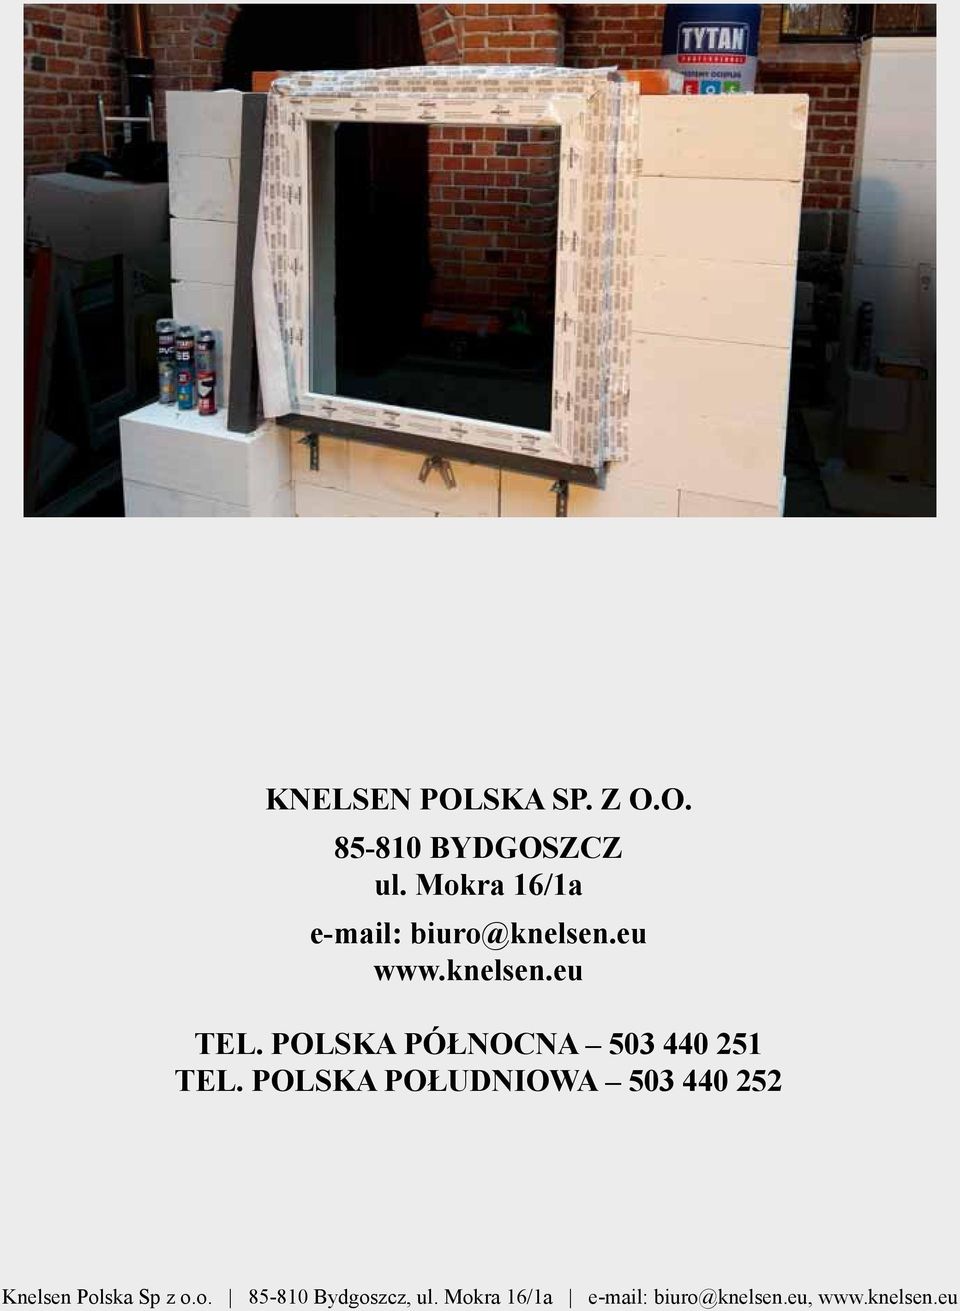 POLSKA POŁUDNIOWA 503 440 252 20 Knelsen Polska Knelsen Sp Polska z o.o. Sp z 85-810 o.